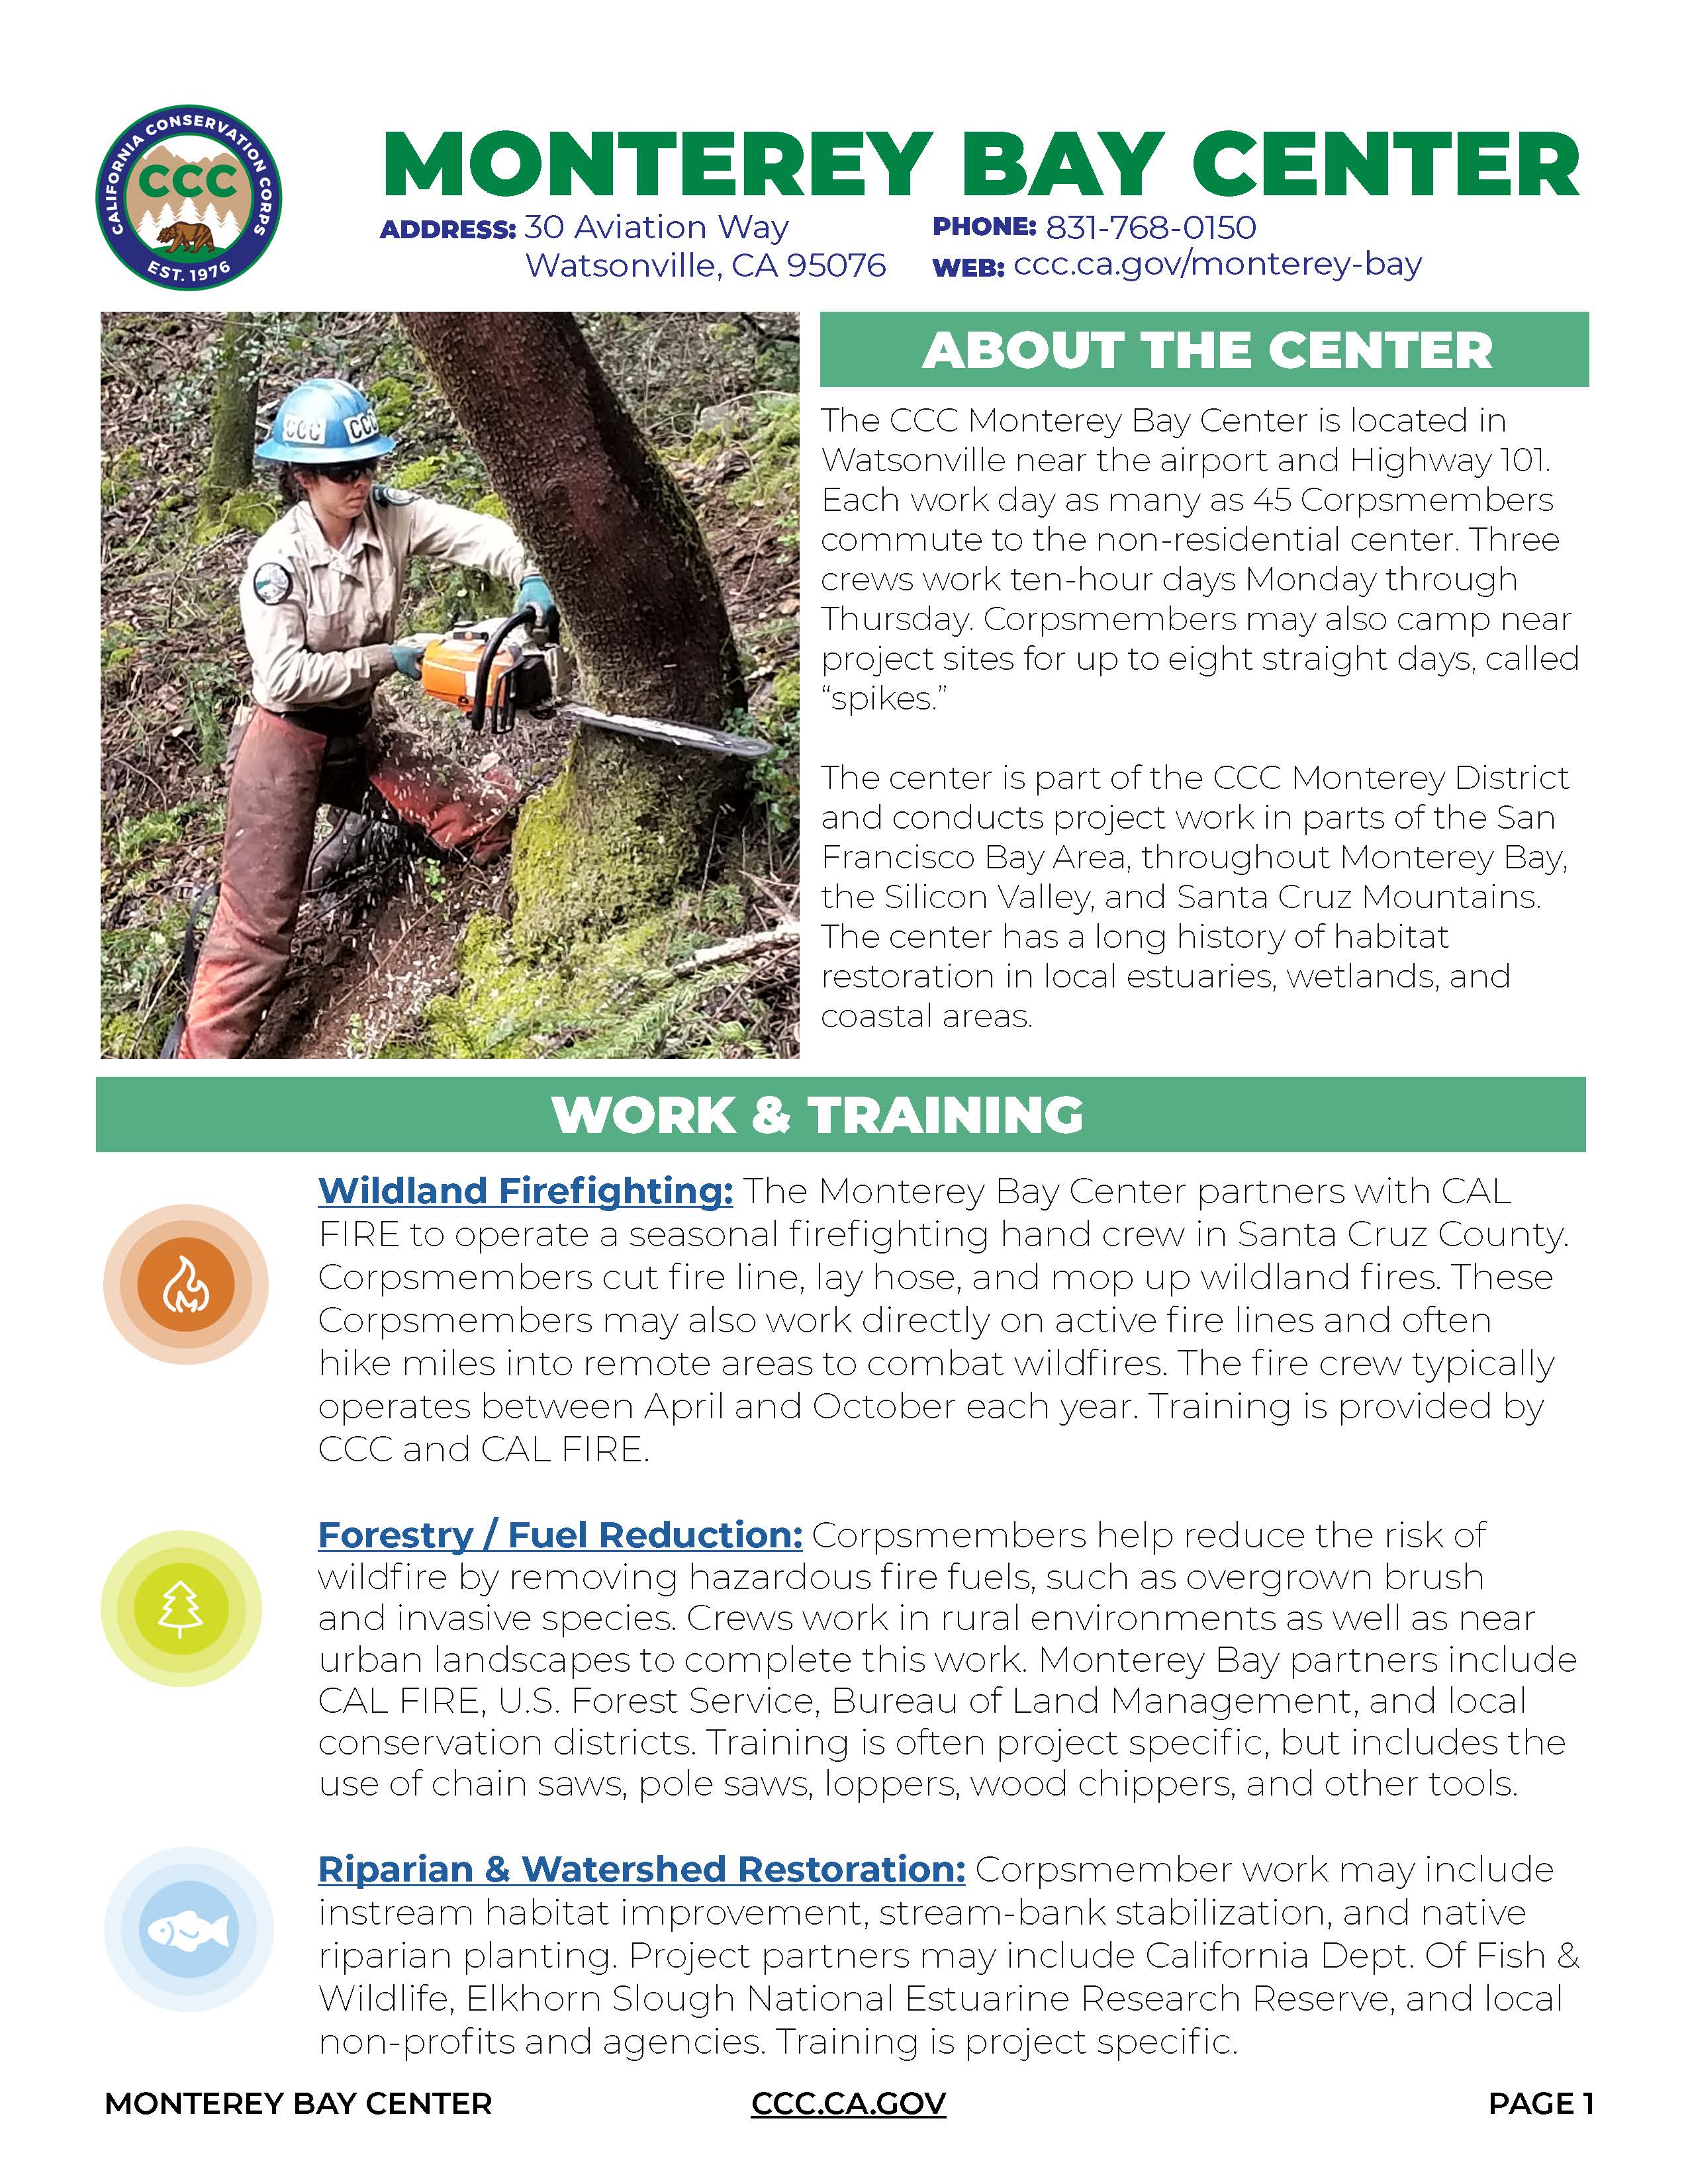 Image of Monterey Center Fact Sheet